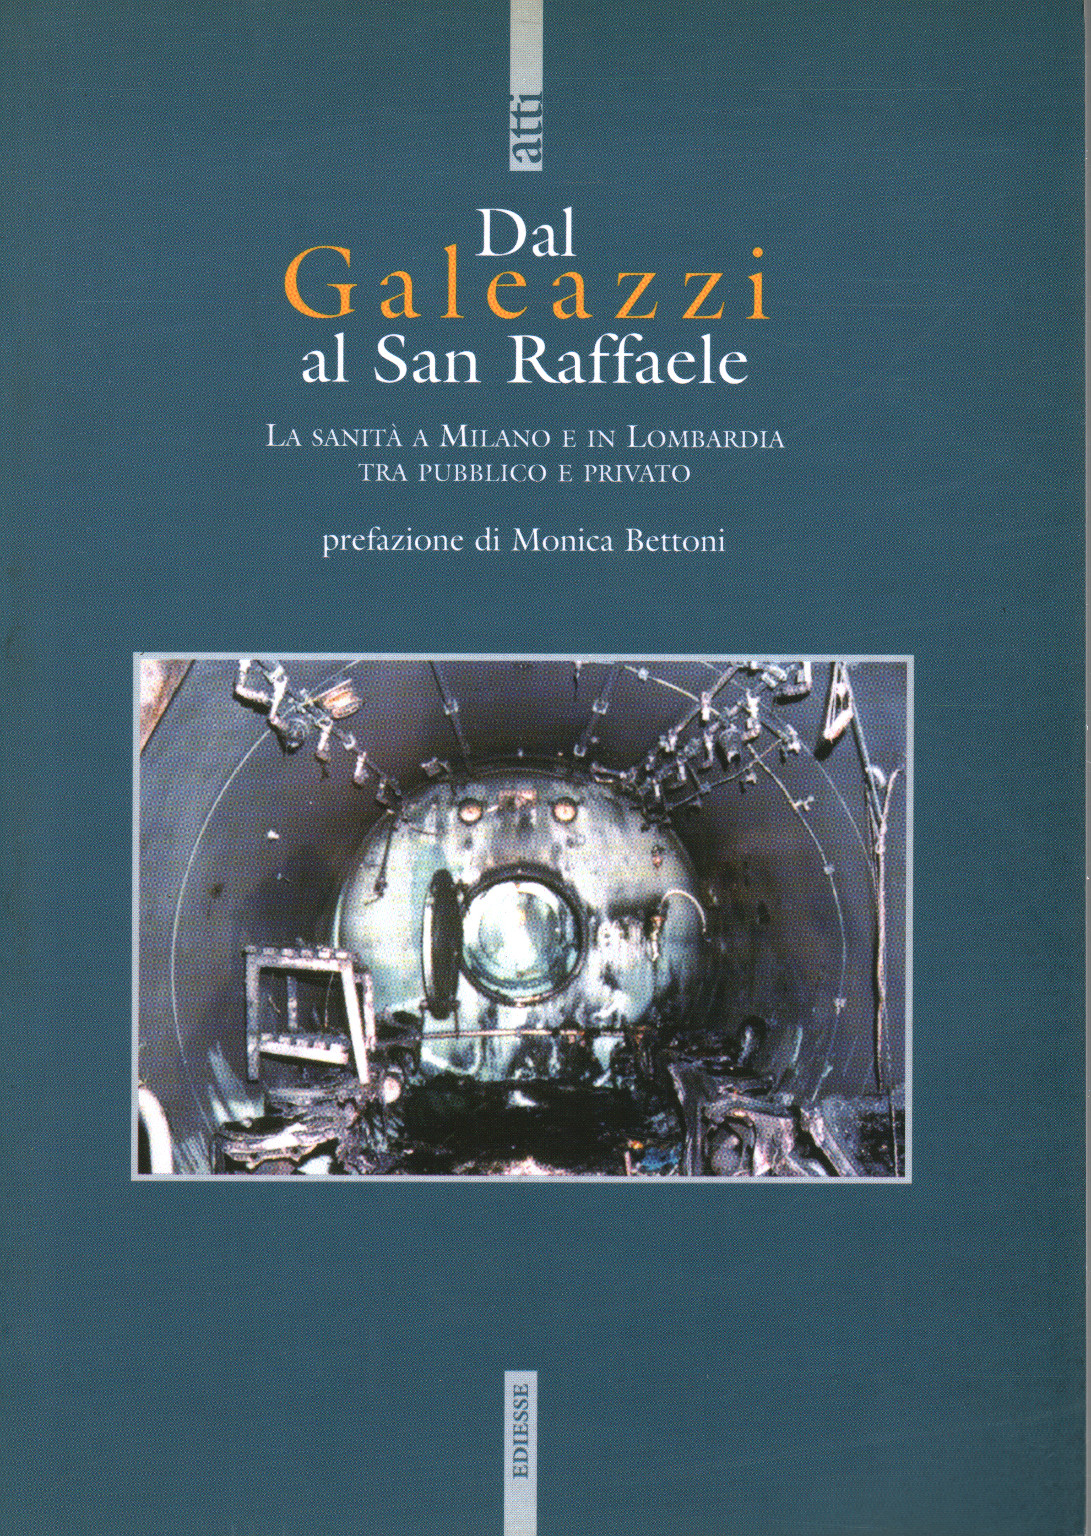 Von Galeazzi, dem San Raffaele, s.zu.